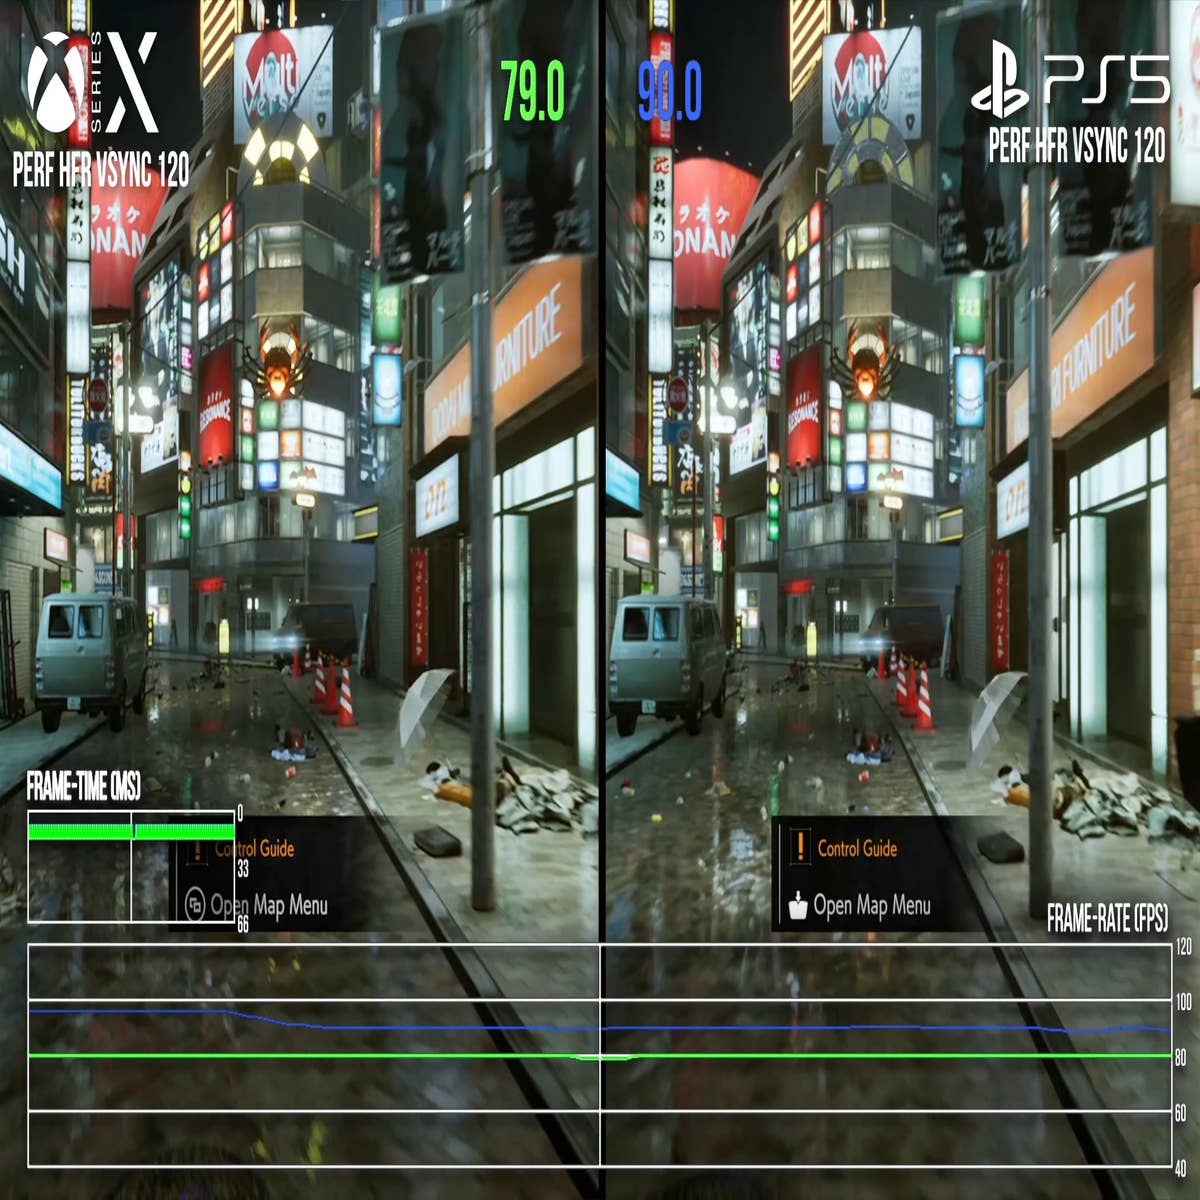 Eita! Versão PS5 de Ghostwire Tokyo supera a de Xbox